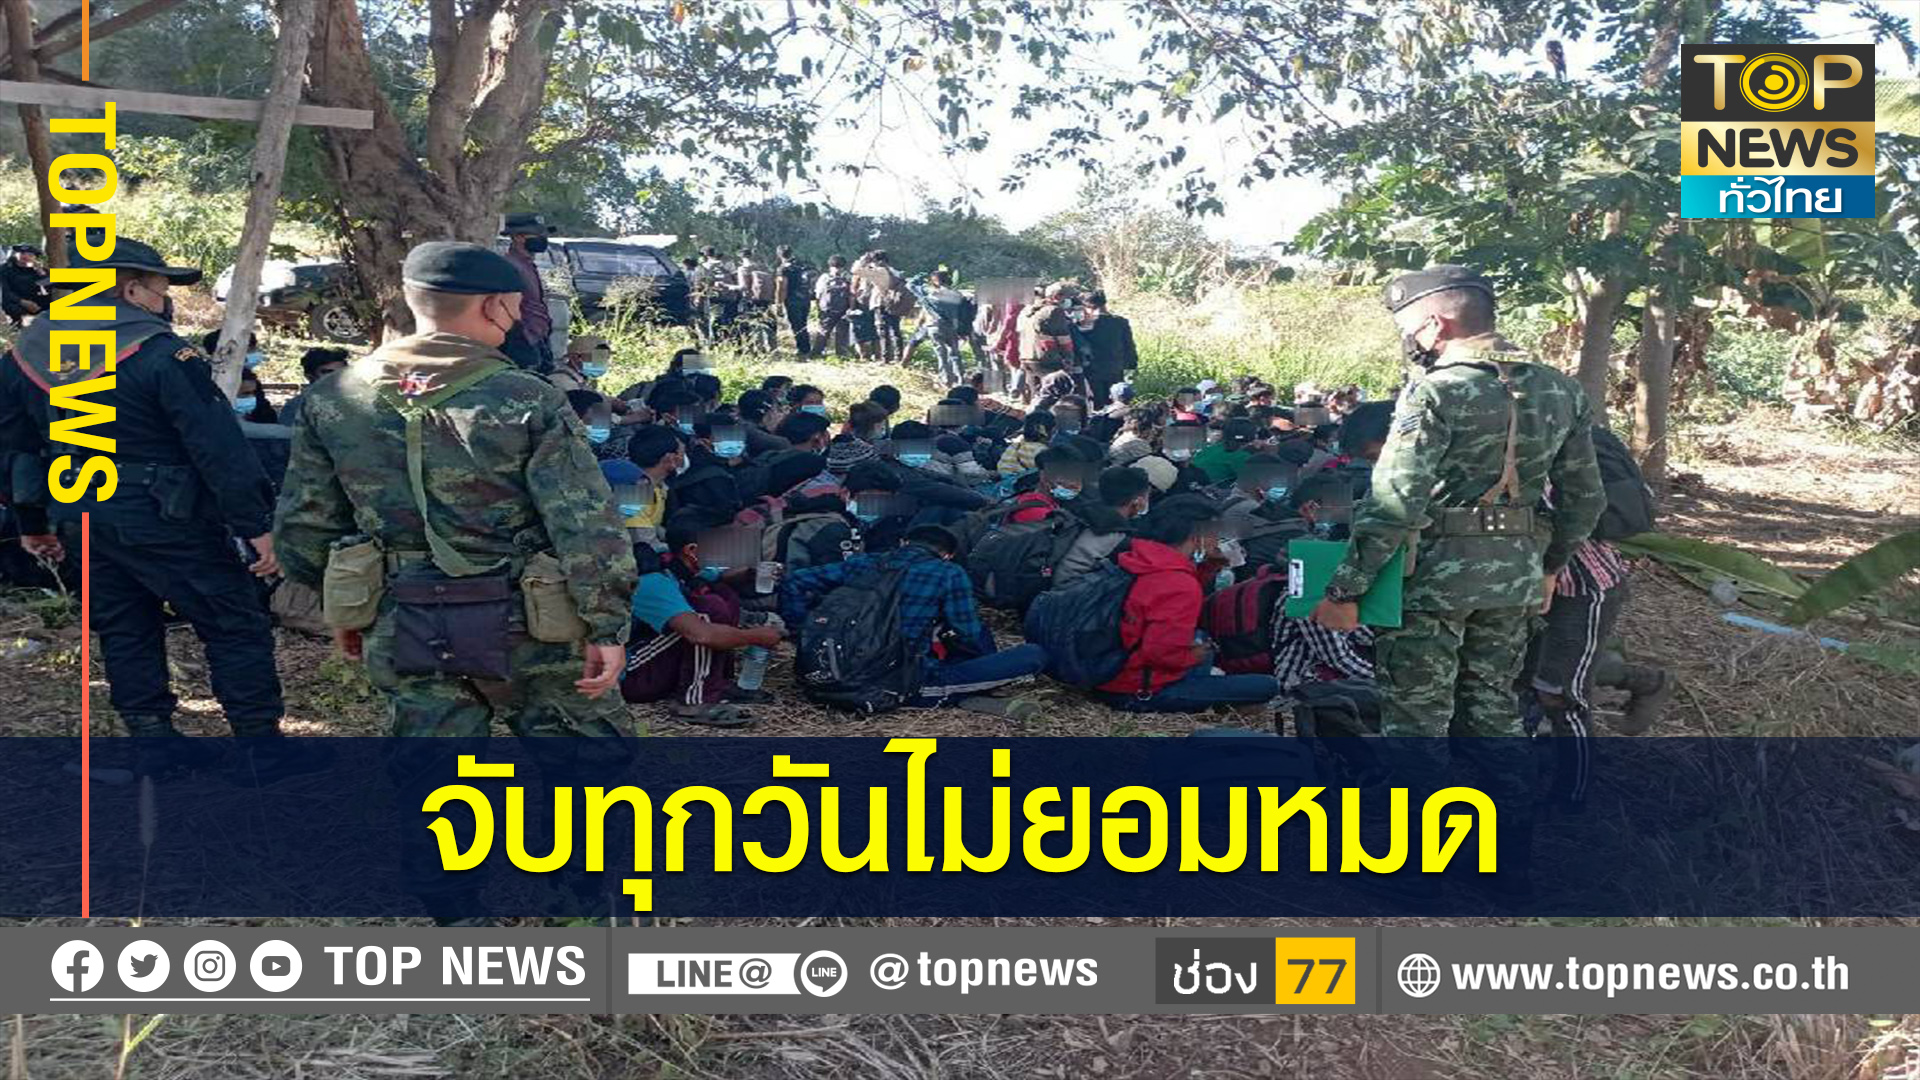 จนท.ลุยจับแรงงานเถื่อน154 คน พร้อมผู้นำพา ชายแดนไทย-พม่า กาญจนบุรี